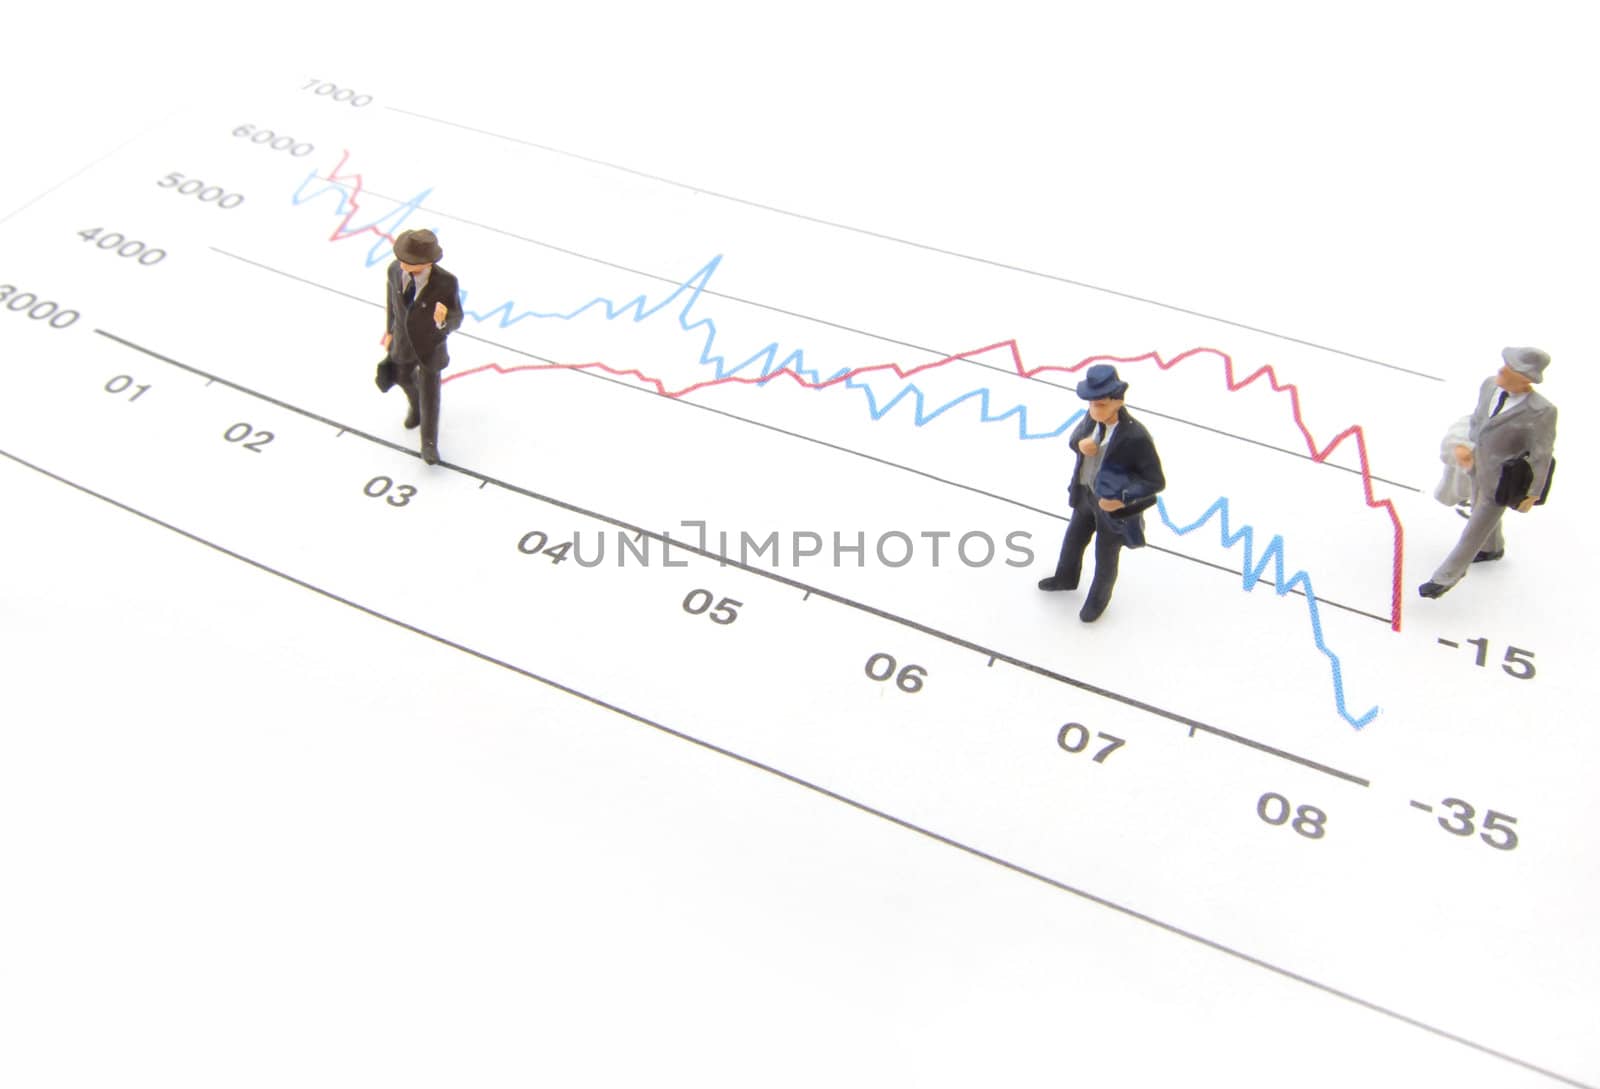 Miniature business men standing on a financial line graph